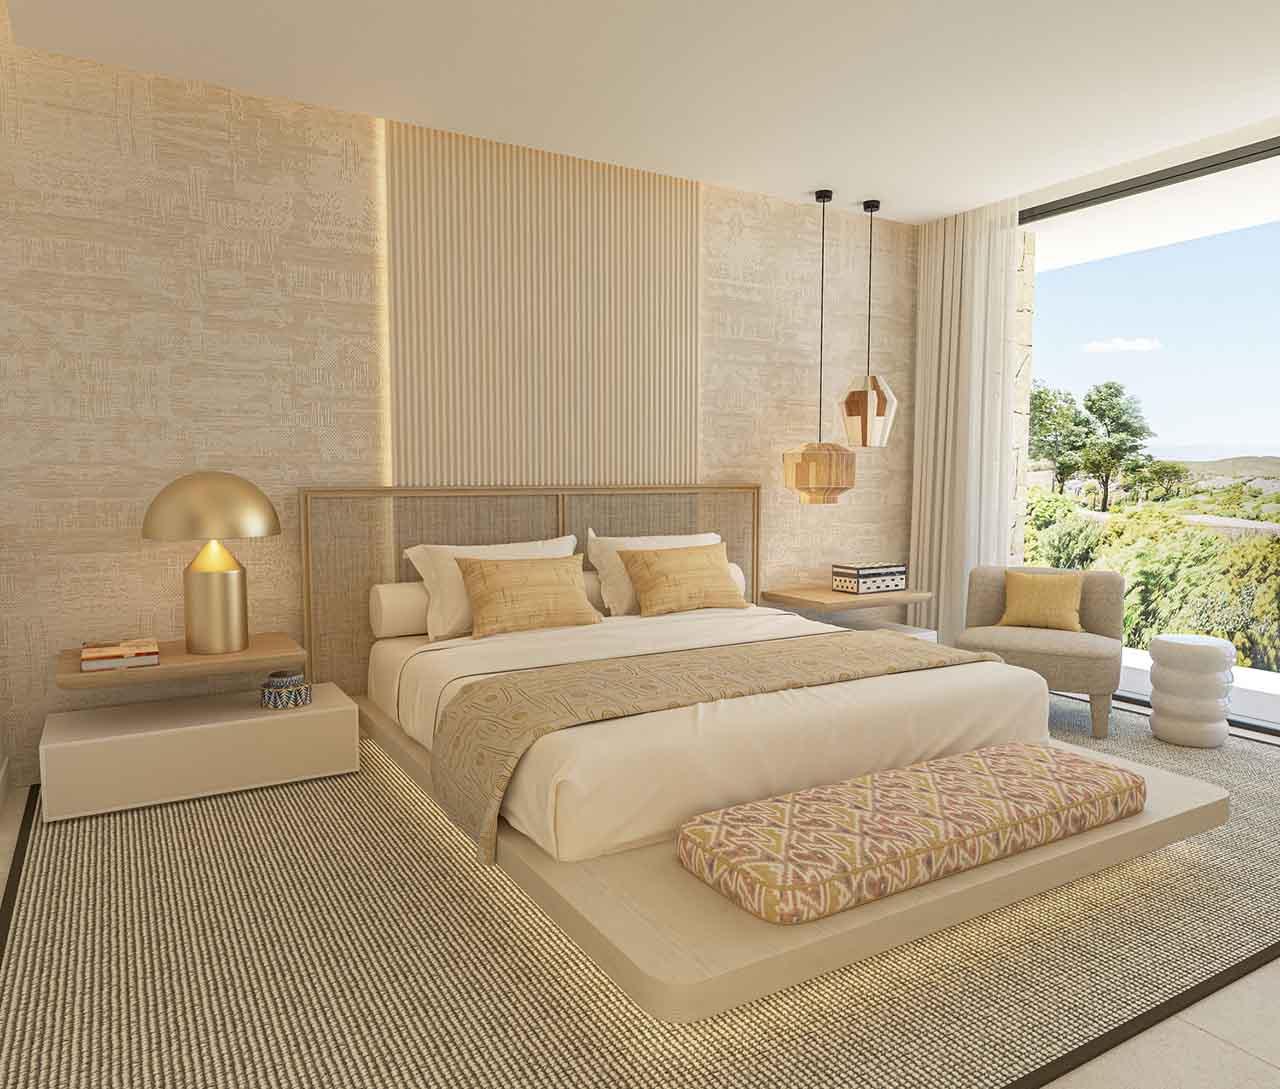 For sale of villa in Ibiza